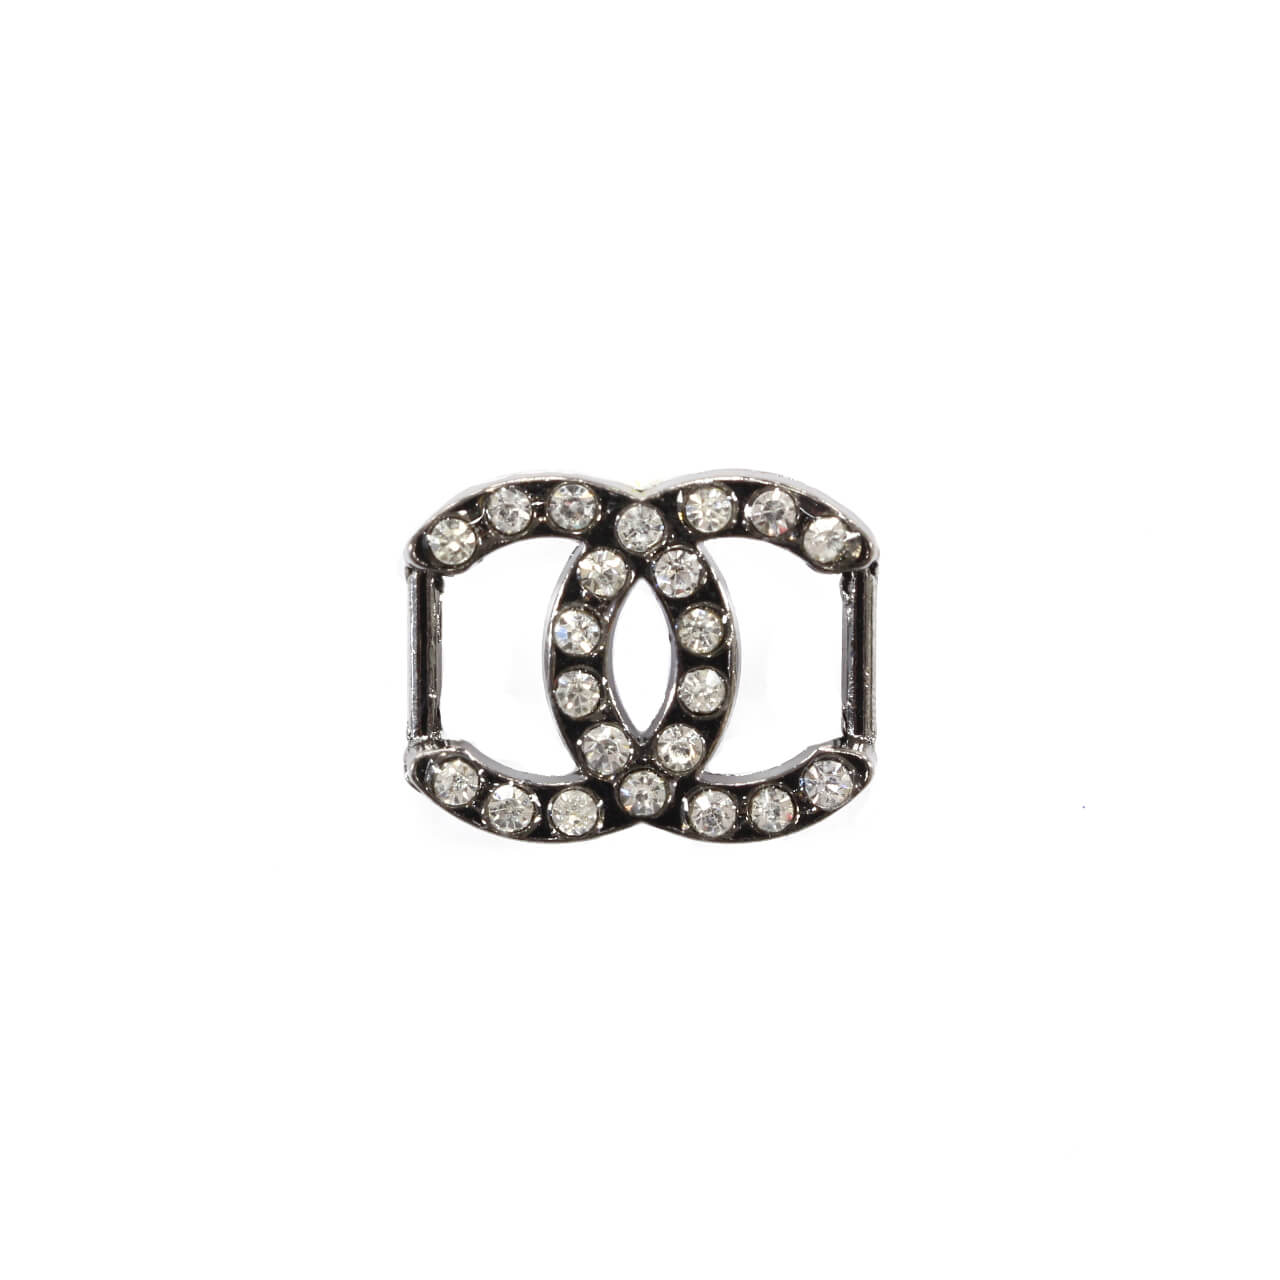 Пряжка шлёвка со стразами Chanel 2 см, цвет Серебро